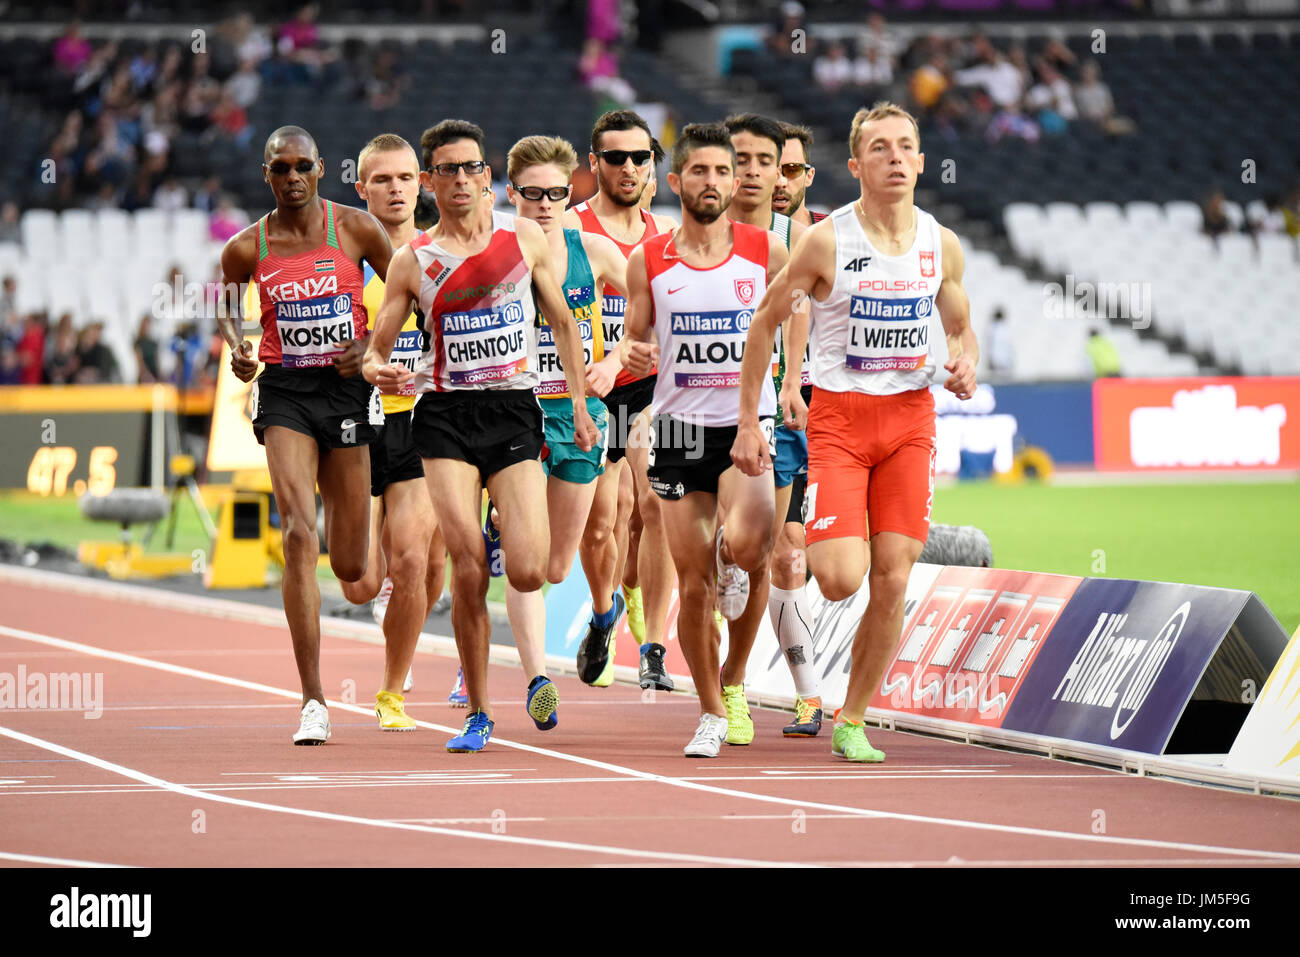 Athlètes concourant au 1500m T13 aux Championnats du monde de para-athlétisme au stade de Londres Banque D'Images